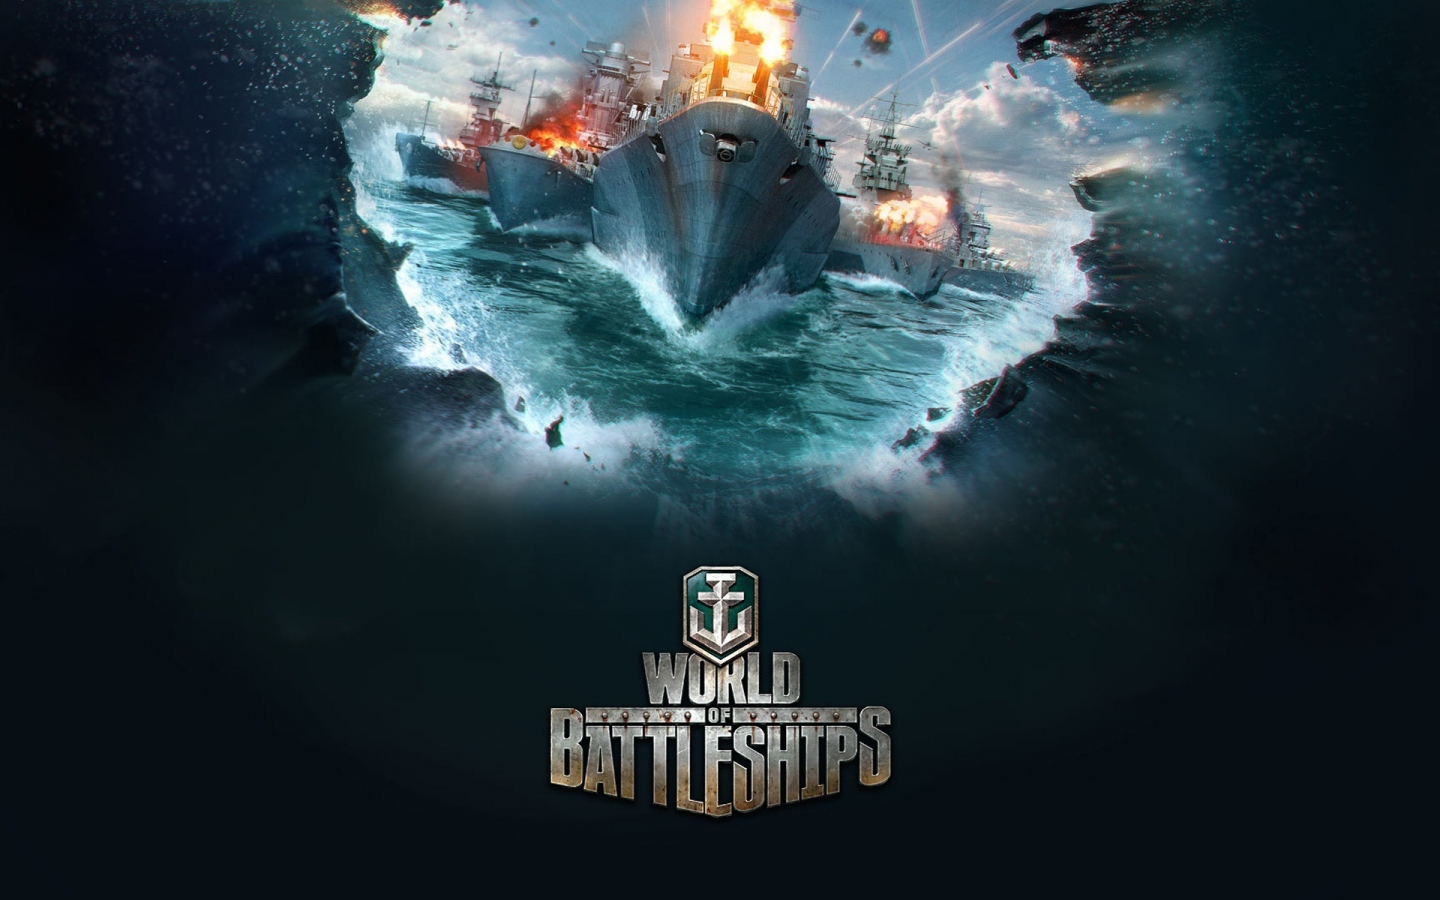 World of Battleships for 1440 x 900 widescreen resolution